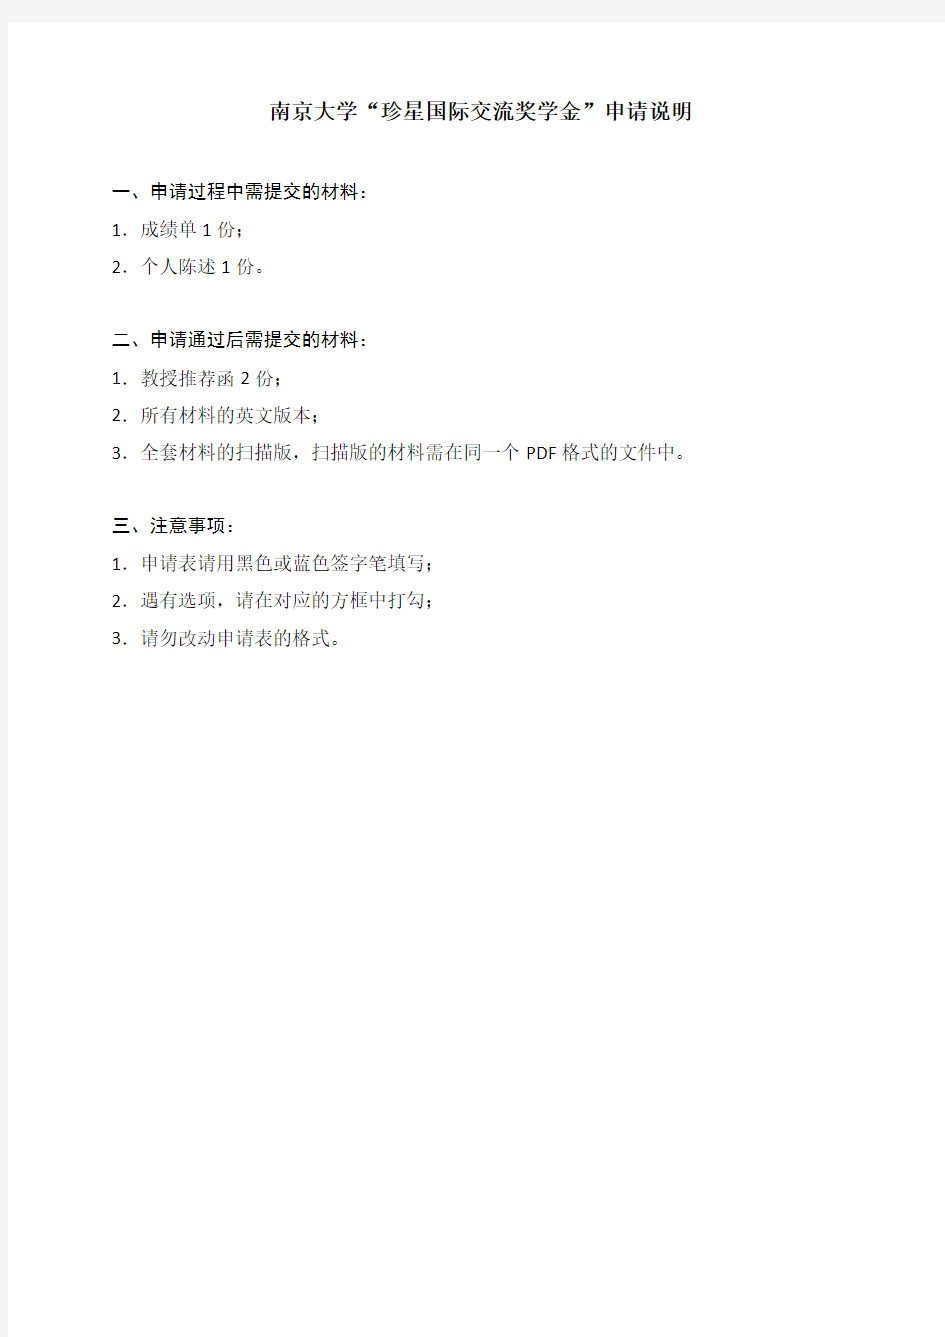 南京大学“珍星国际交流奖学金”申请表